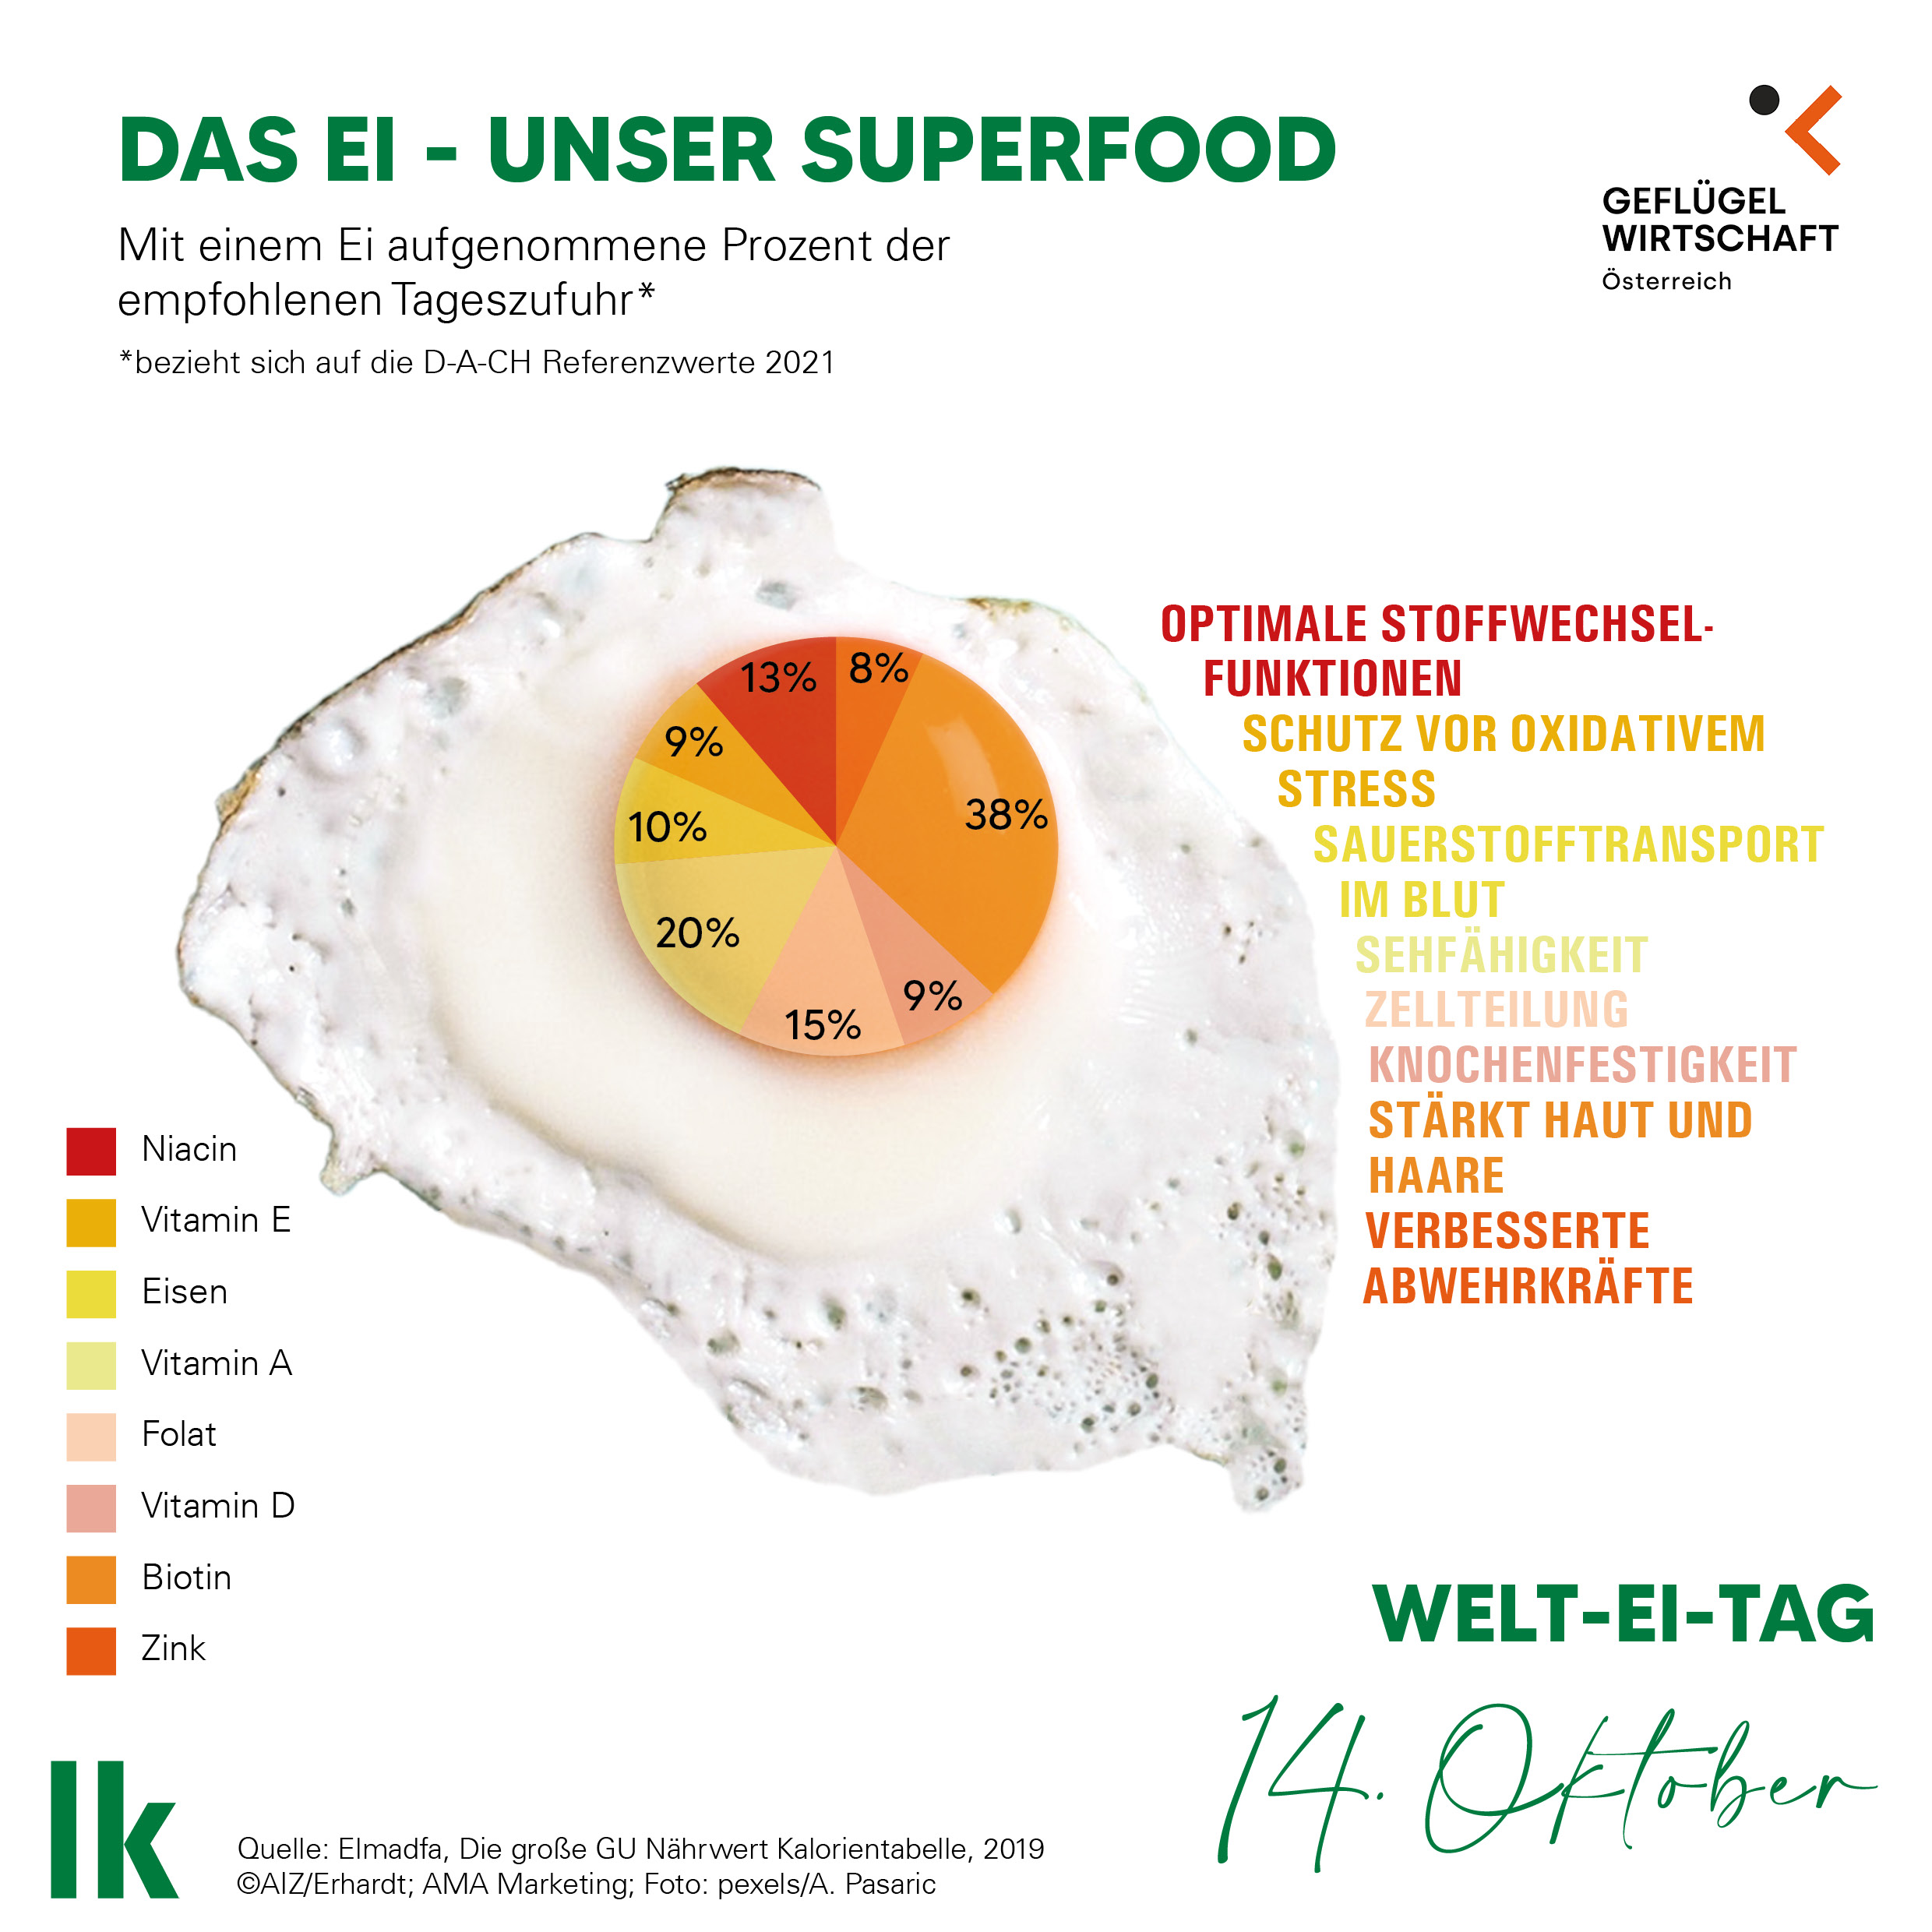 Das Ei - unser Superfood. Mit einem Ei aufgenommen Prozente der empfohlenen Tageszufuhr: 38% Zink, 15% Folat, 20% Vitamin Am 13% Niacin